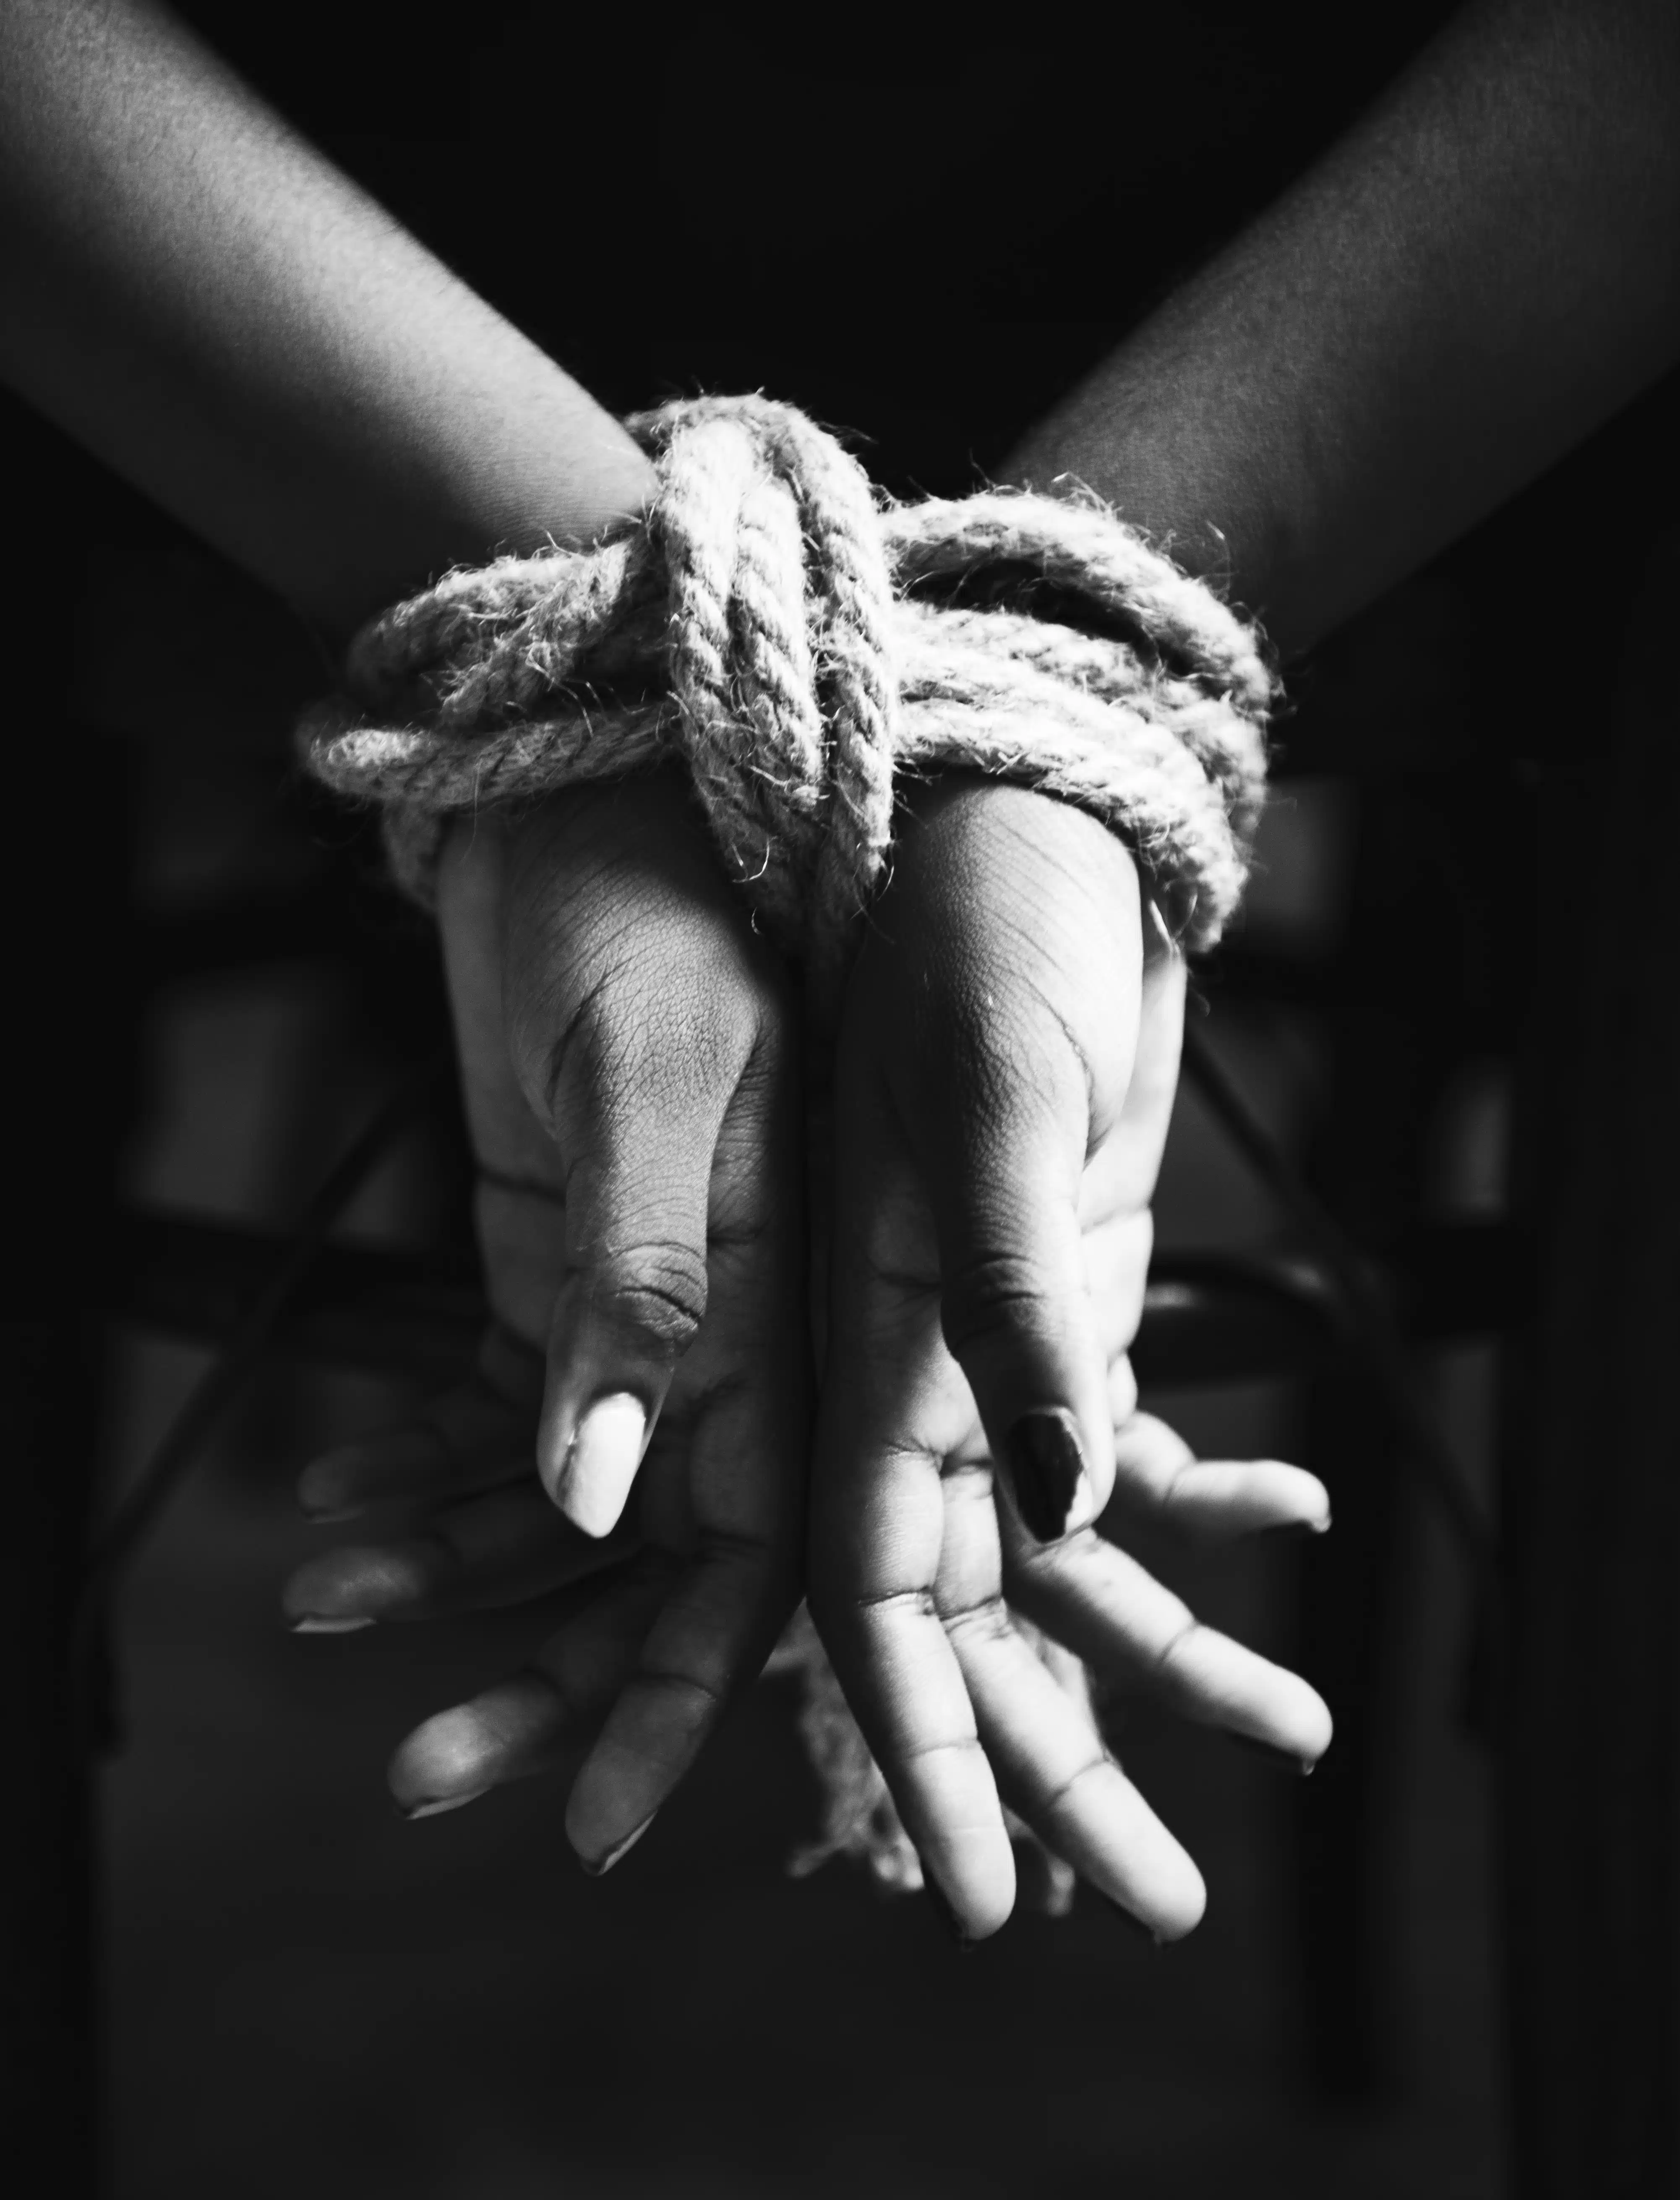 Manos atadas con una cuerda representando violencia y trata de personas